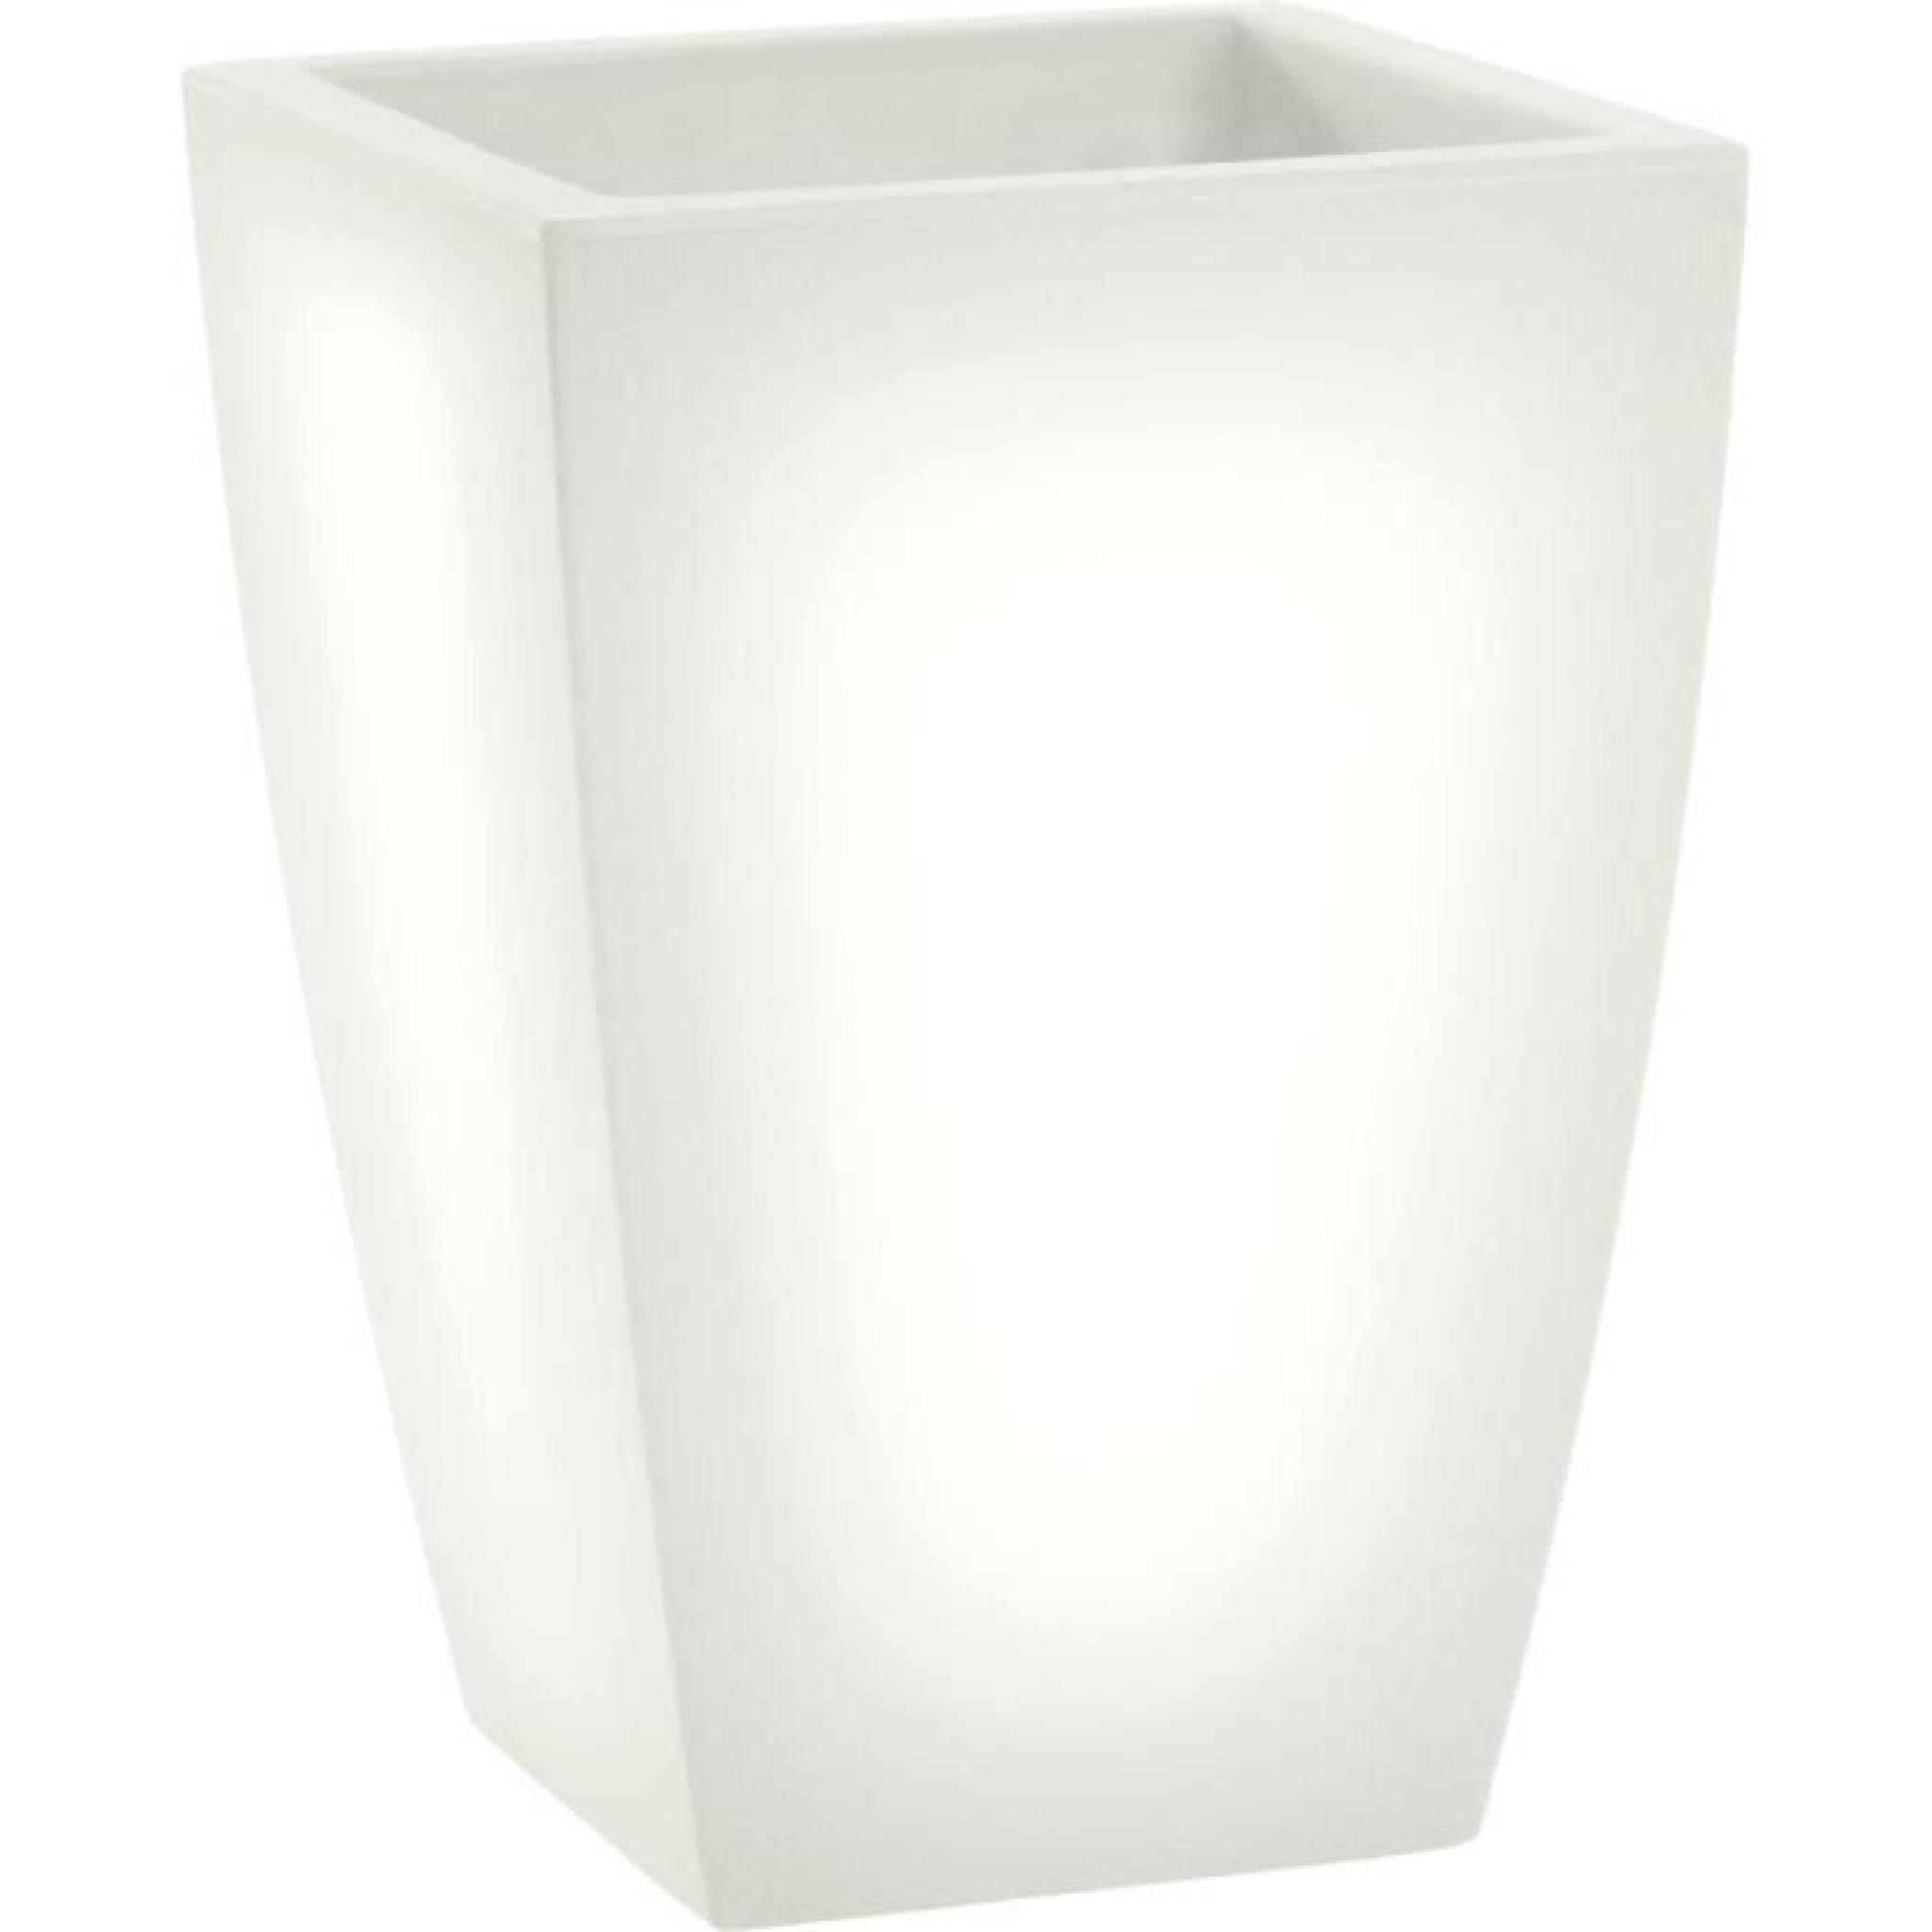 LED pot de fleurs lumineux, lumière blanc chaud, l30 x h60 x l30 cm, fait de haute qualité polyéthylène